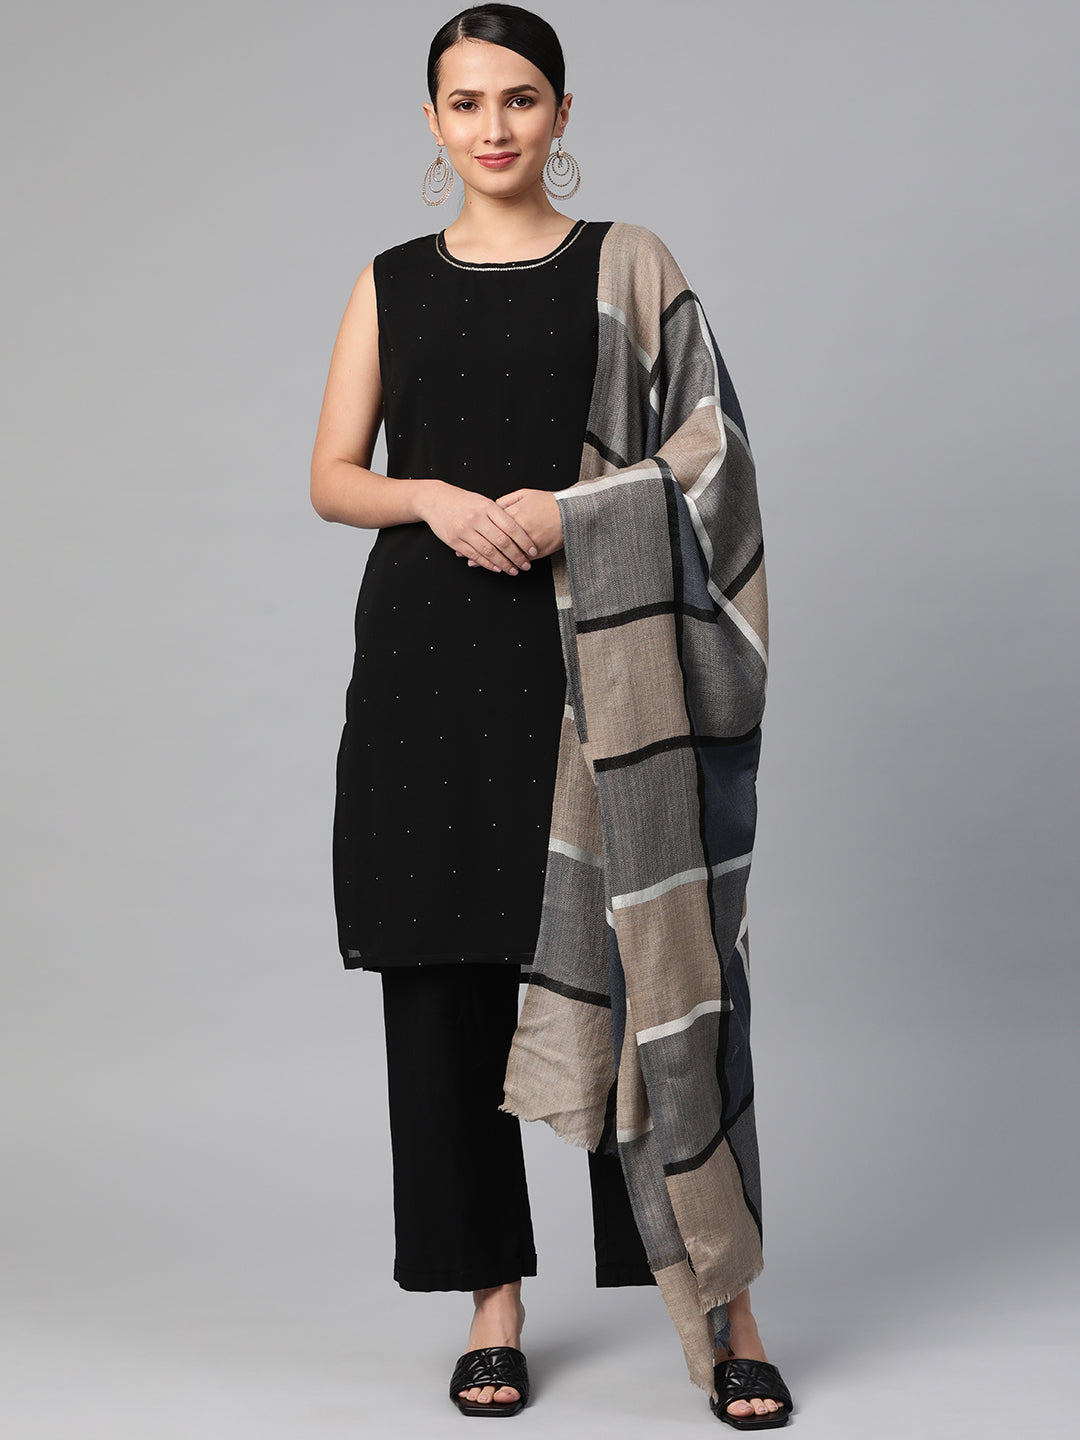 woolen shawls handmade, pure woolen shawl, woolen shawl online